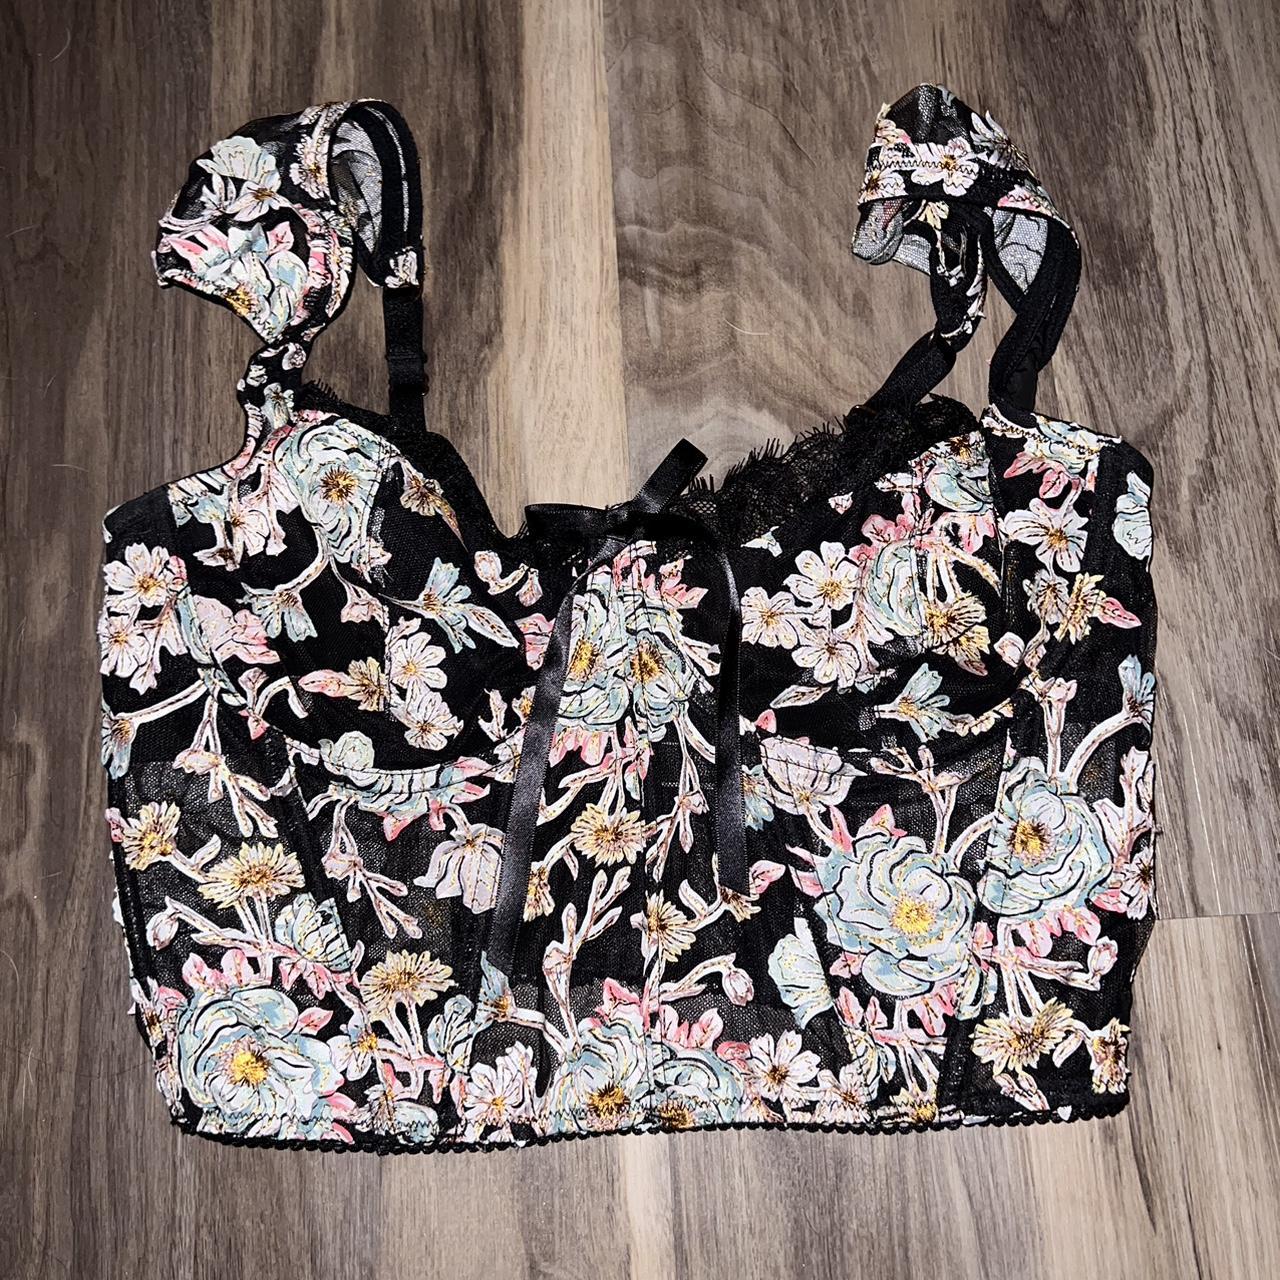 Victoria’s secret Corset Top, Gorgeous floral pattern